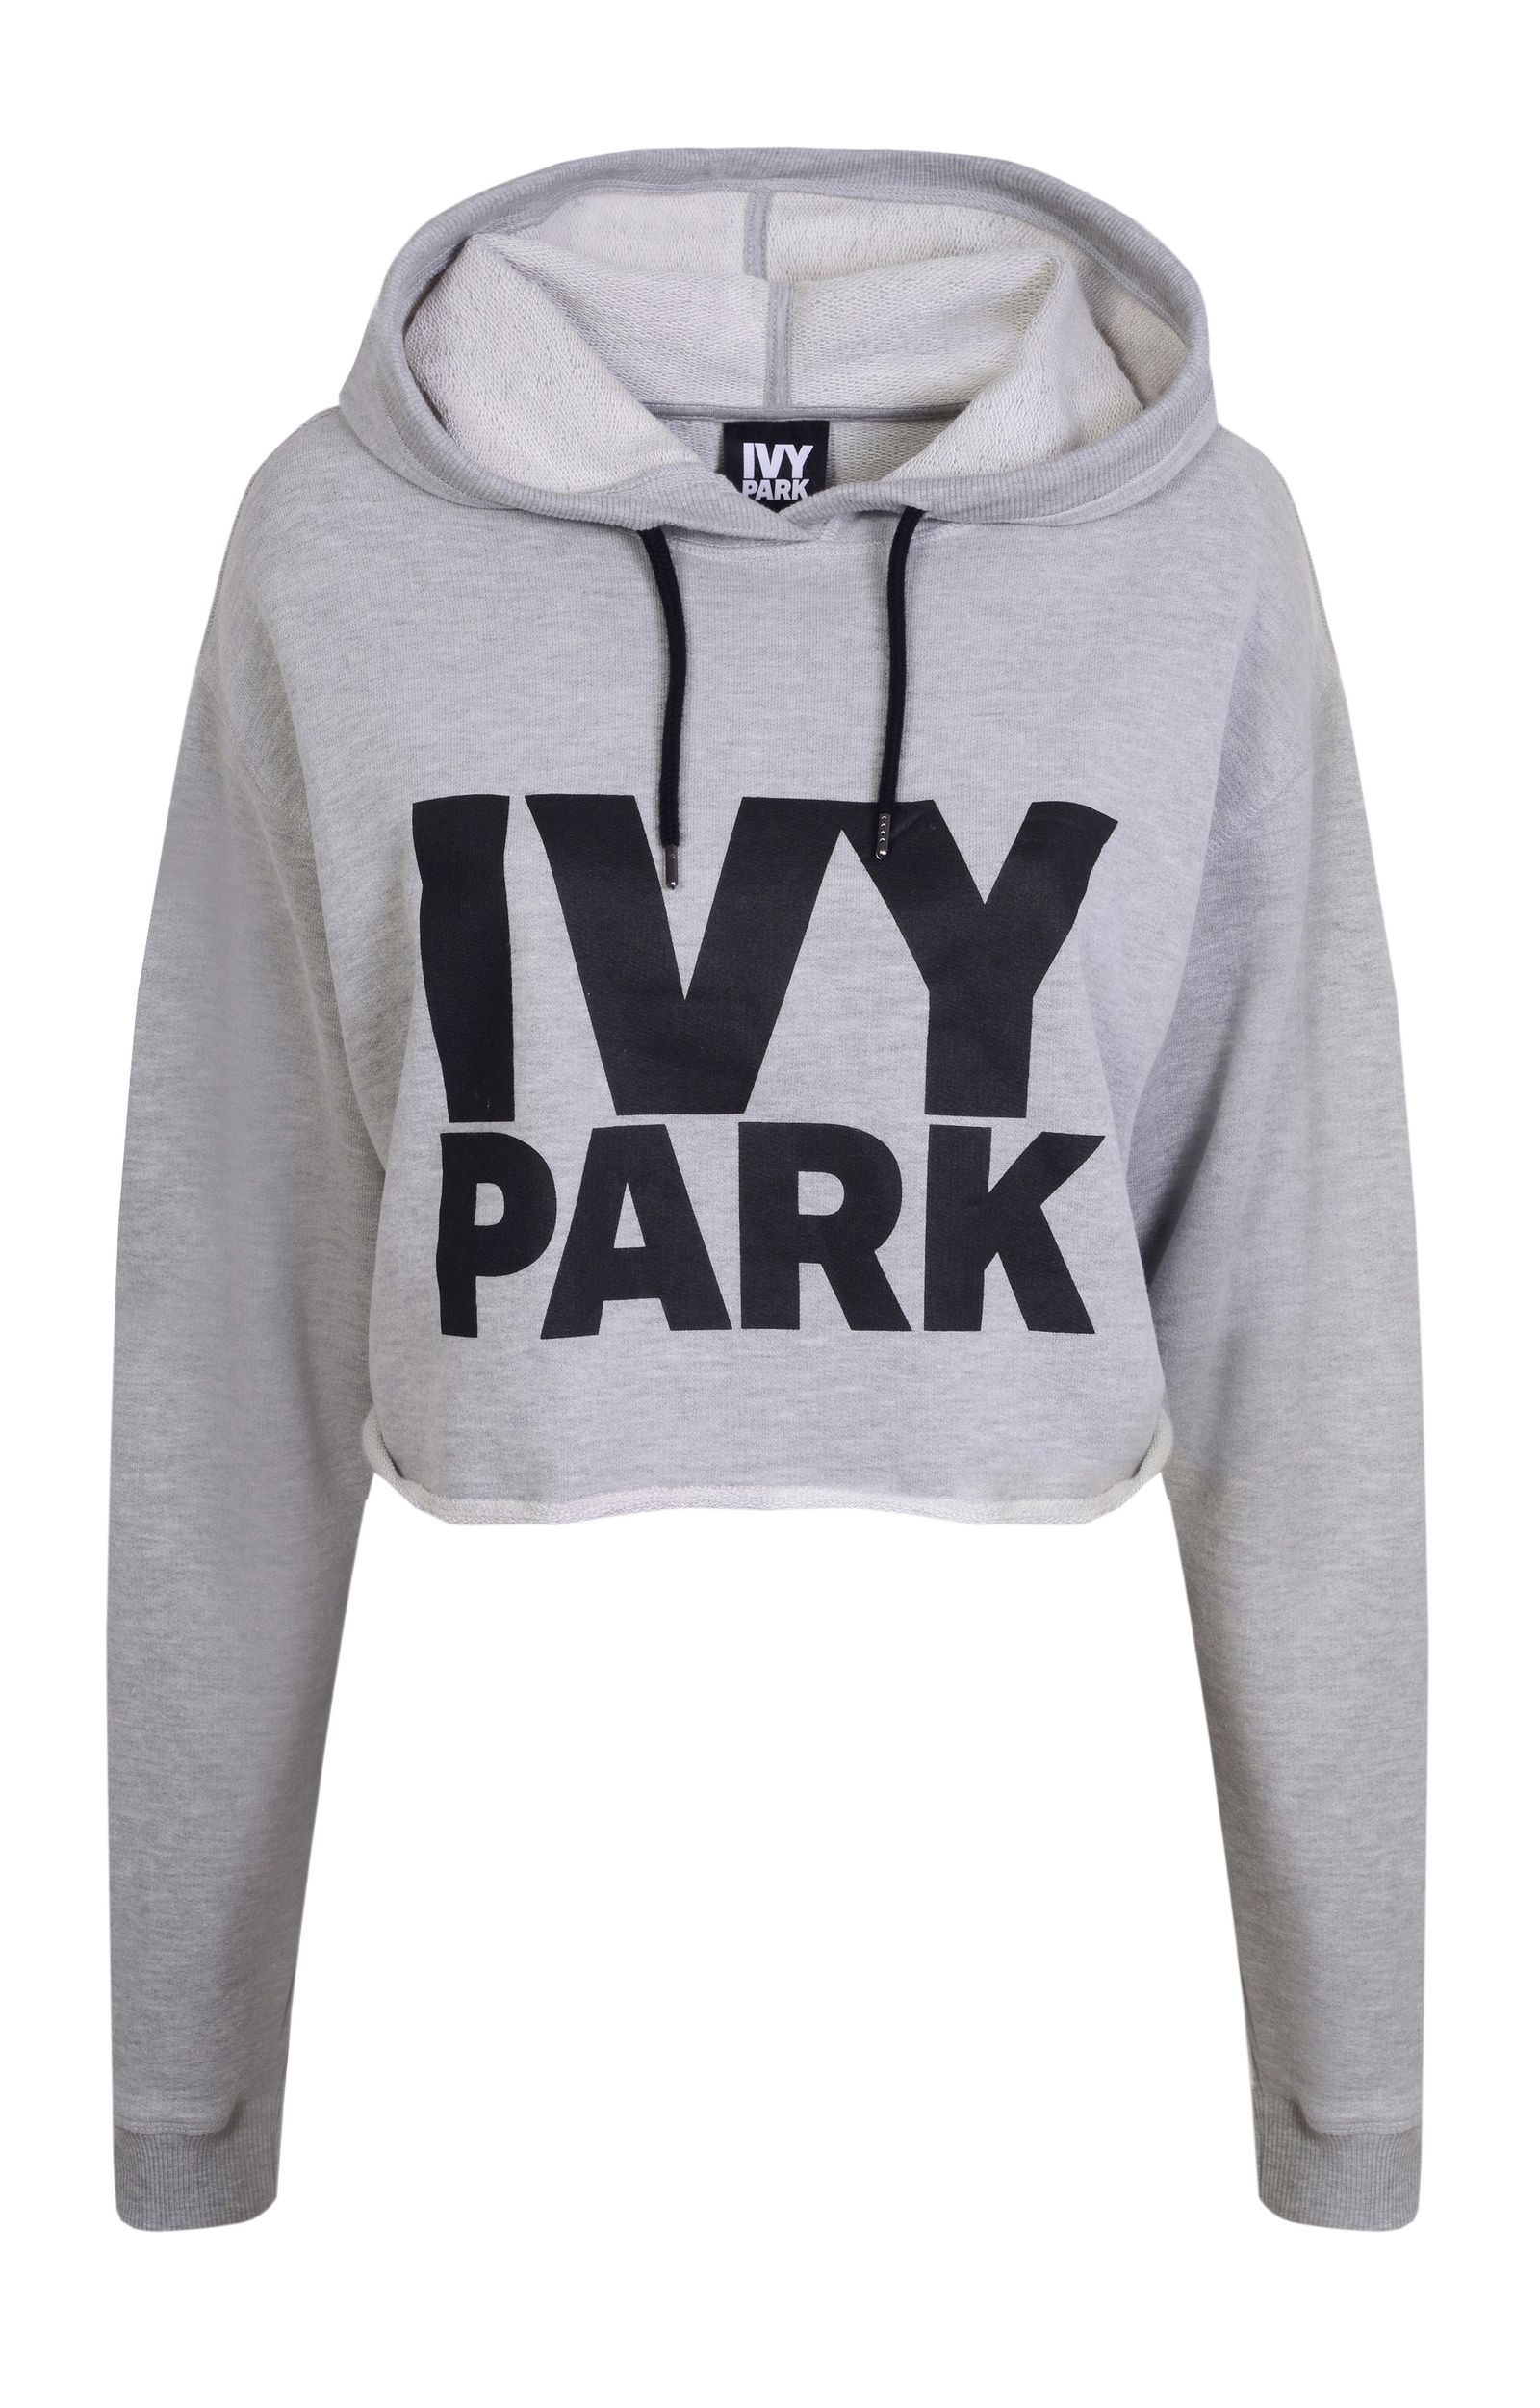 Ivy Park Cropped Hoodie